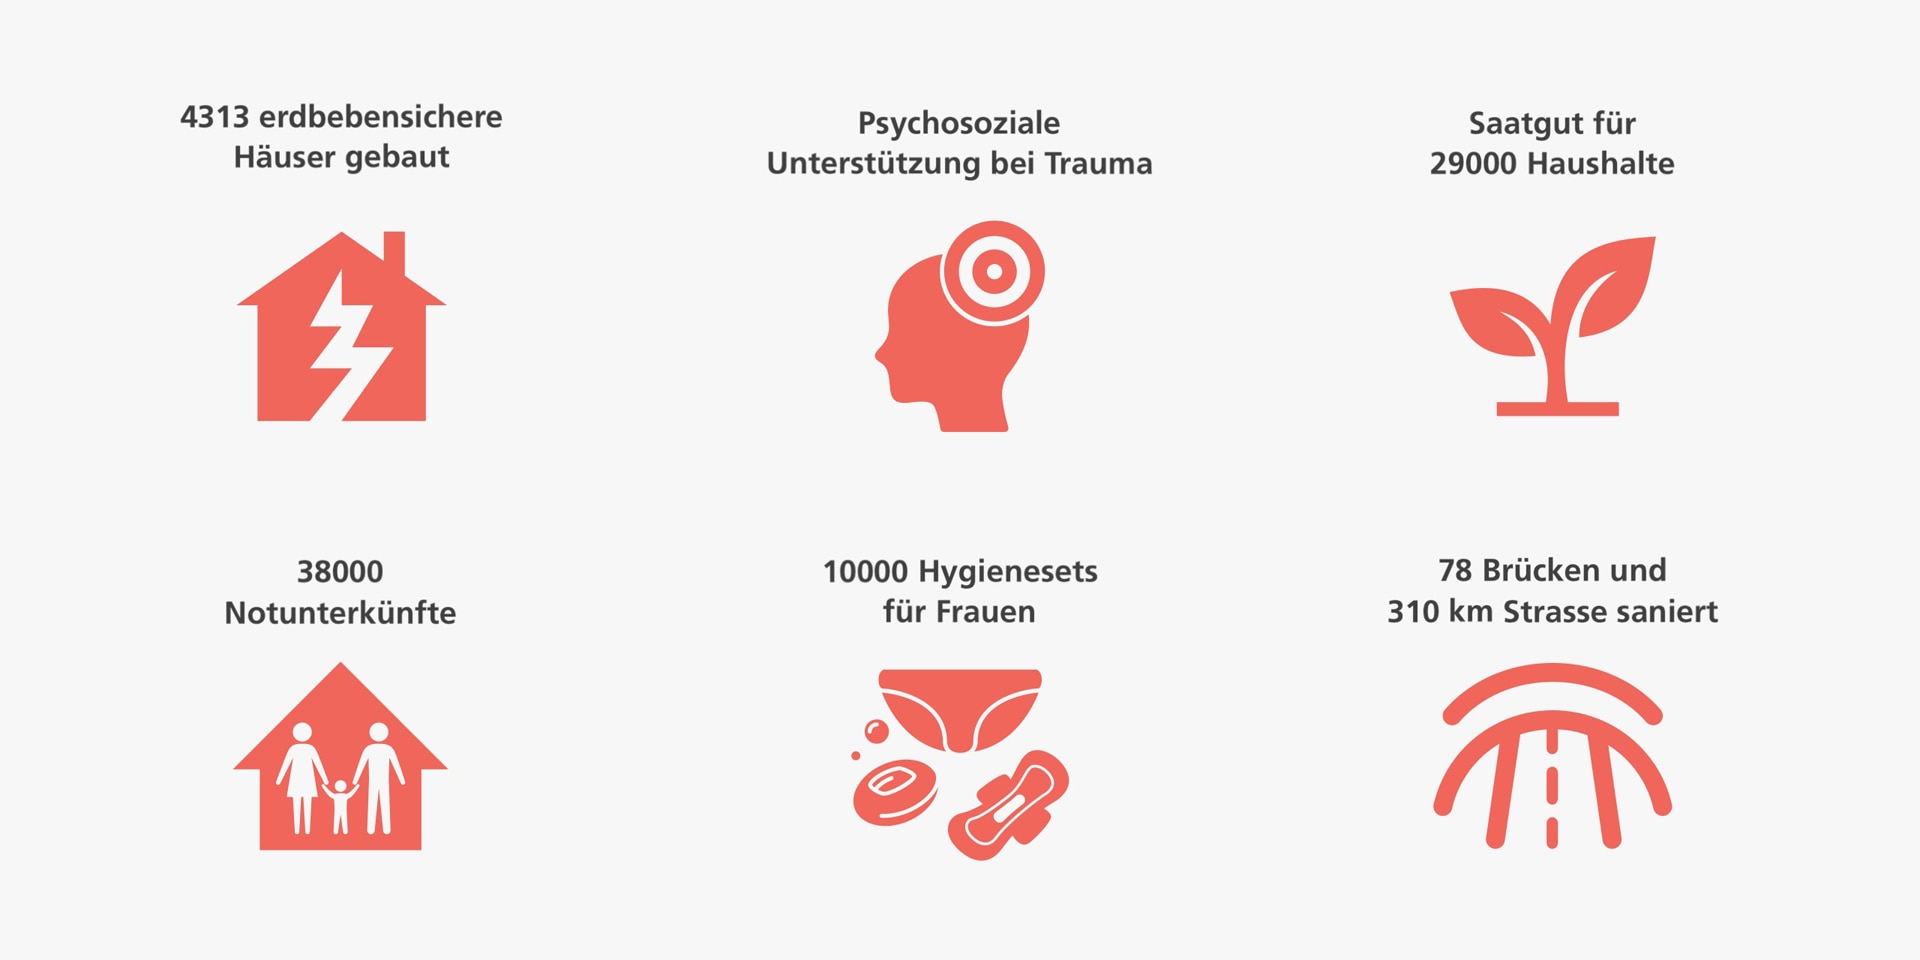 Infografik die mit Icons illustriert ist und auf welcher geschrieben steht: Risikoprävention durch erdbebensicheres Bauen; Psychosoziale Unterstützung bei Trauma; Saatgut für 29'000 Haushalte; 30'000 Notunterkünfte